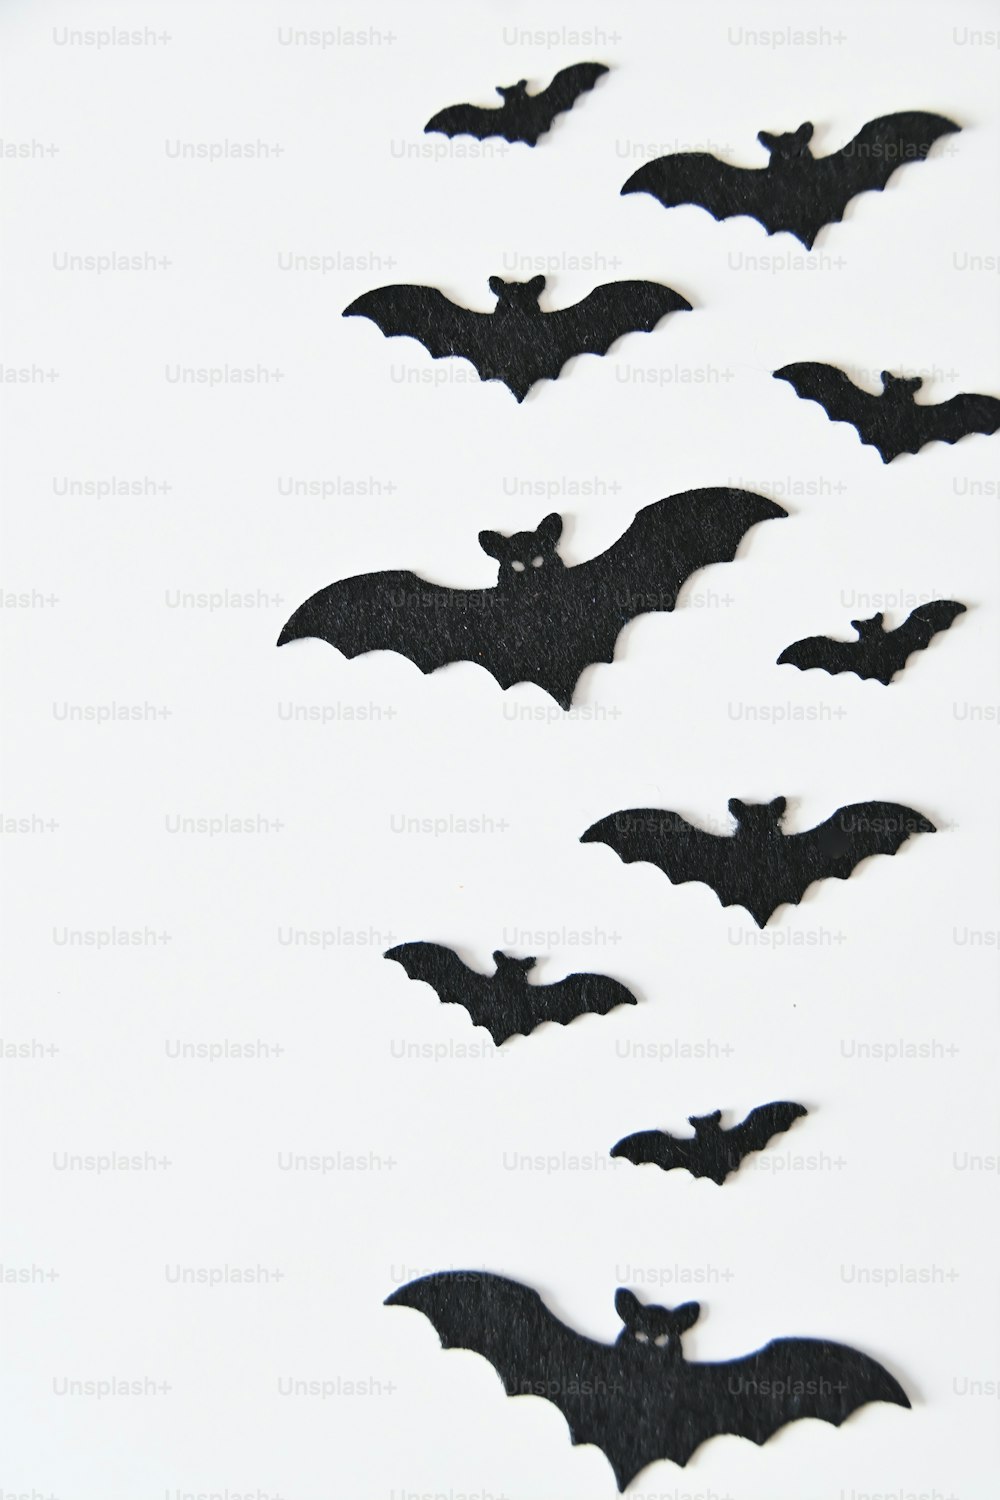 Un gruppo di pipistrelli che volano nell'aria